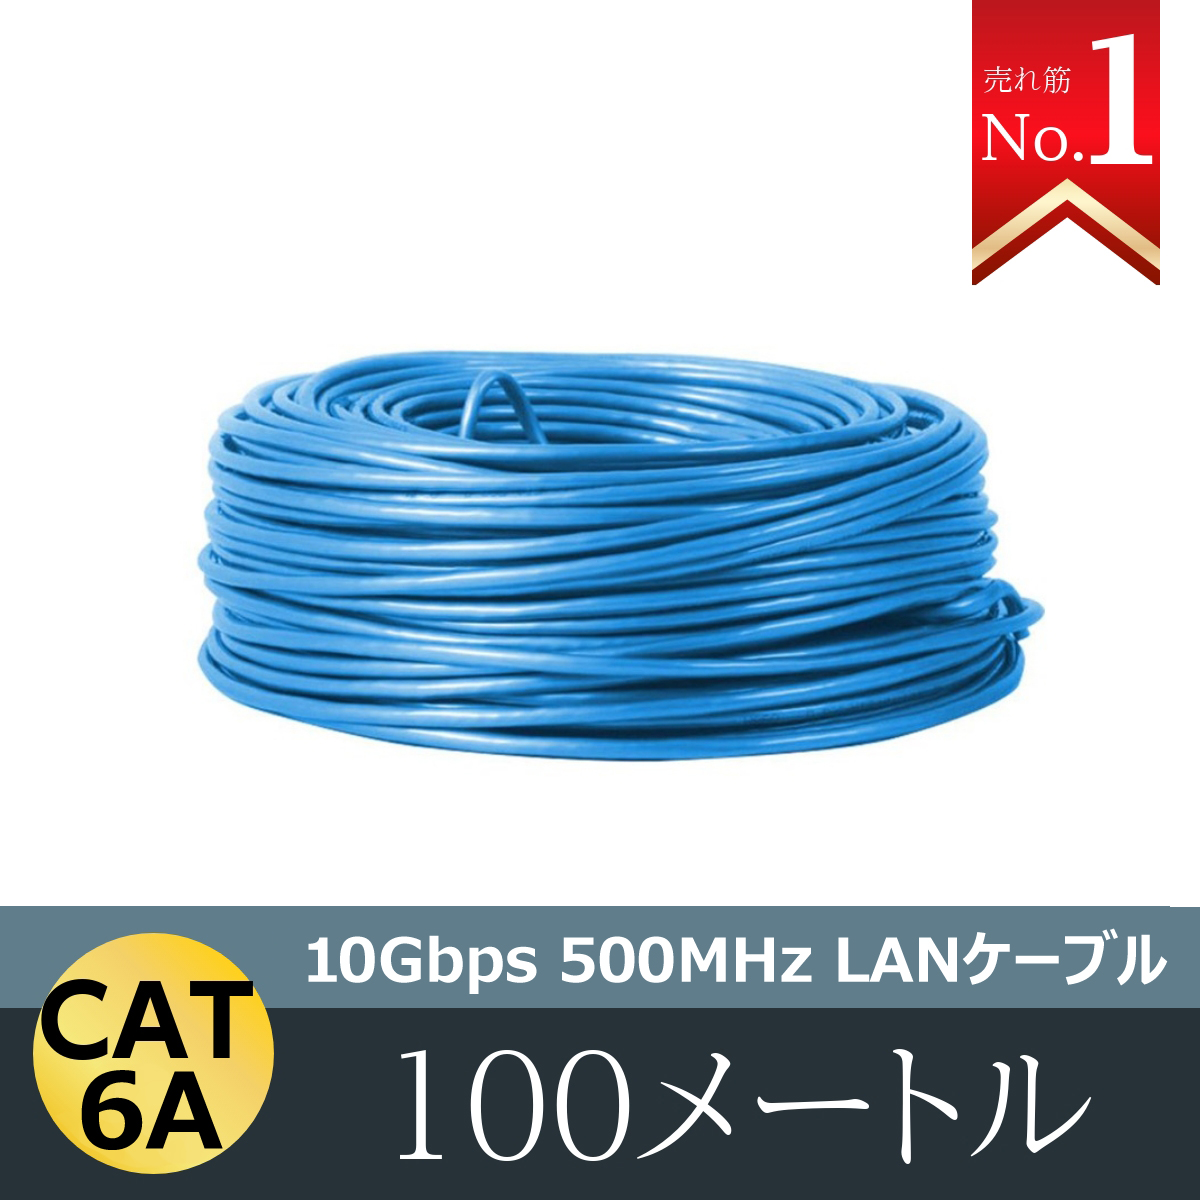 ノートPCLANケーブル 300m 1巻 CAT 6A 10Gbps 500MHz 光回線